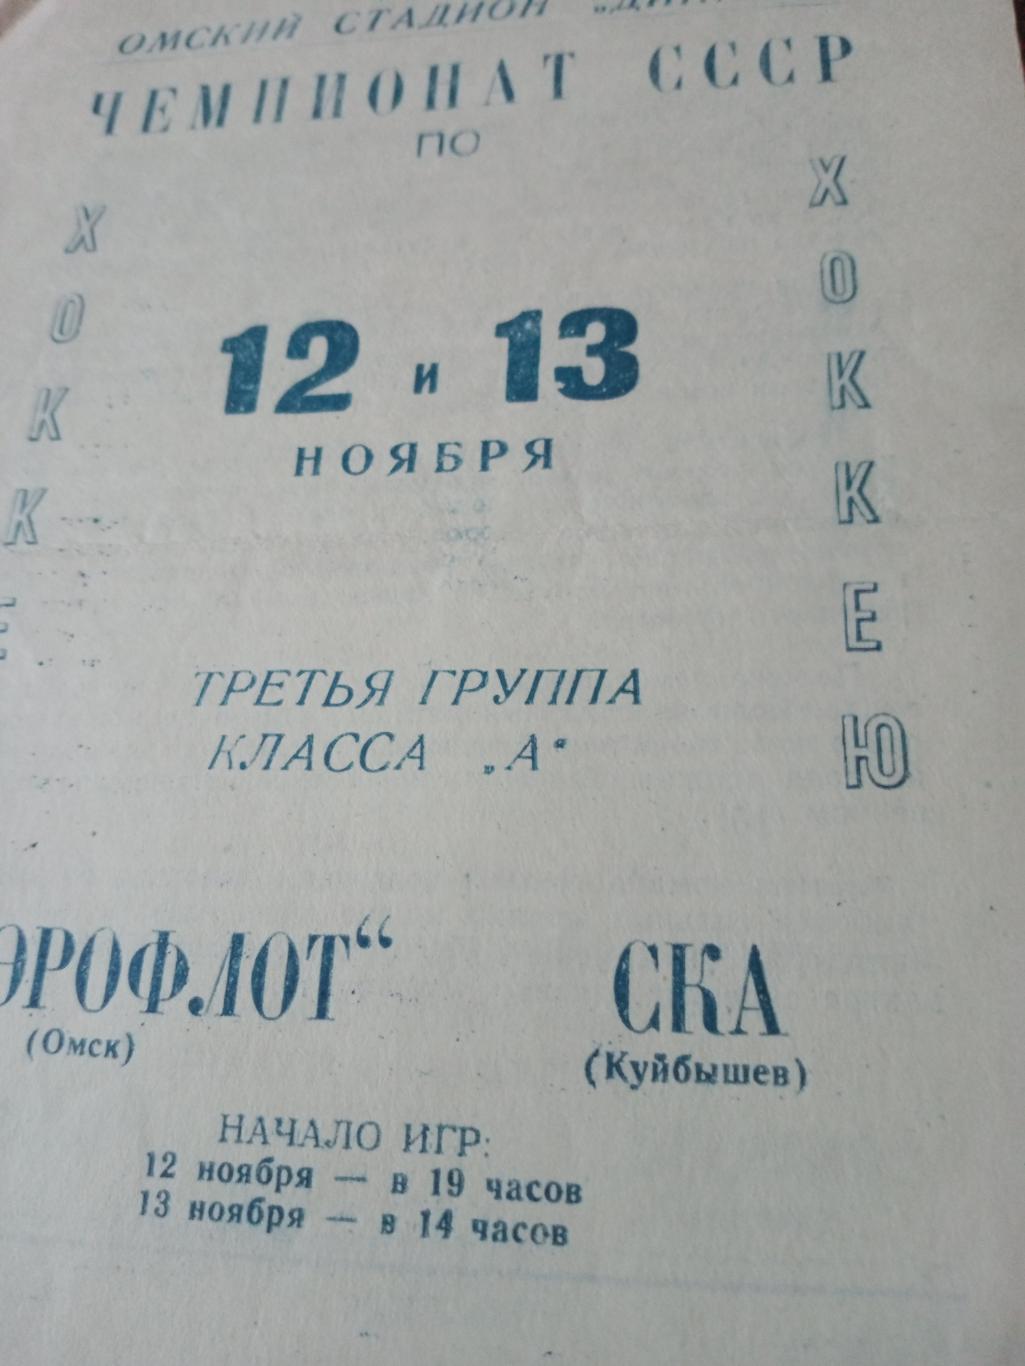 Аэрофлот Омск - СКА Куйбышев. 12 и 13 ноября 1966 год